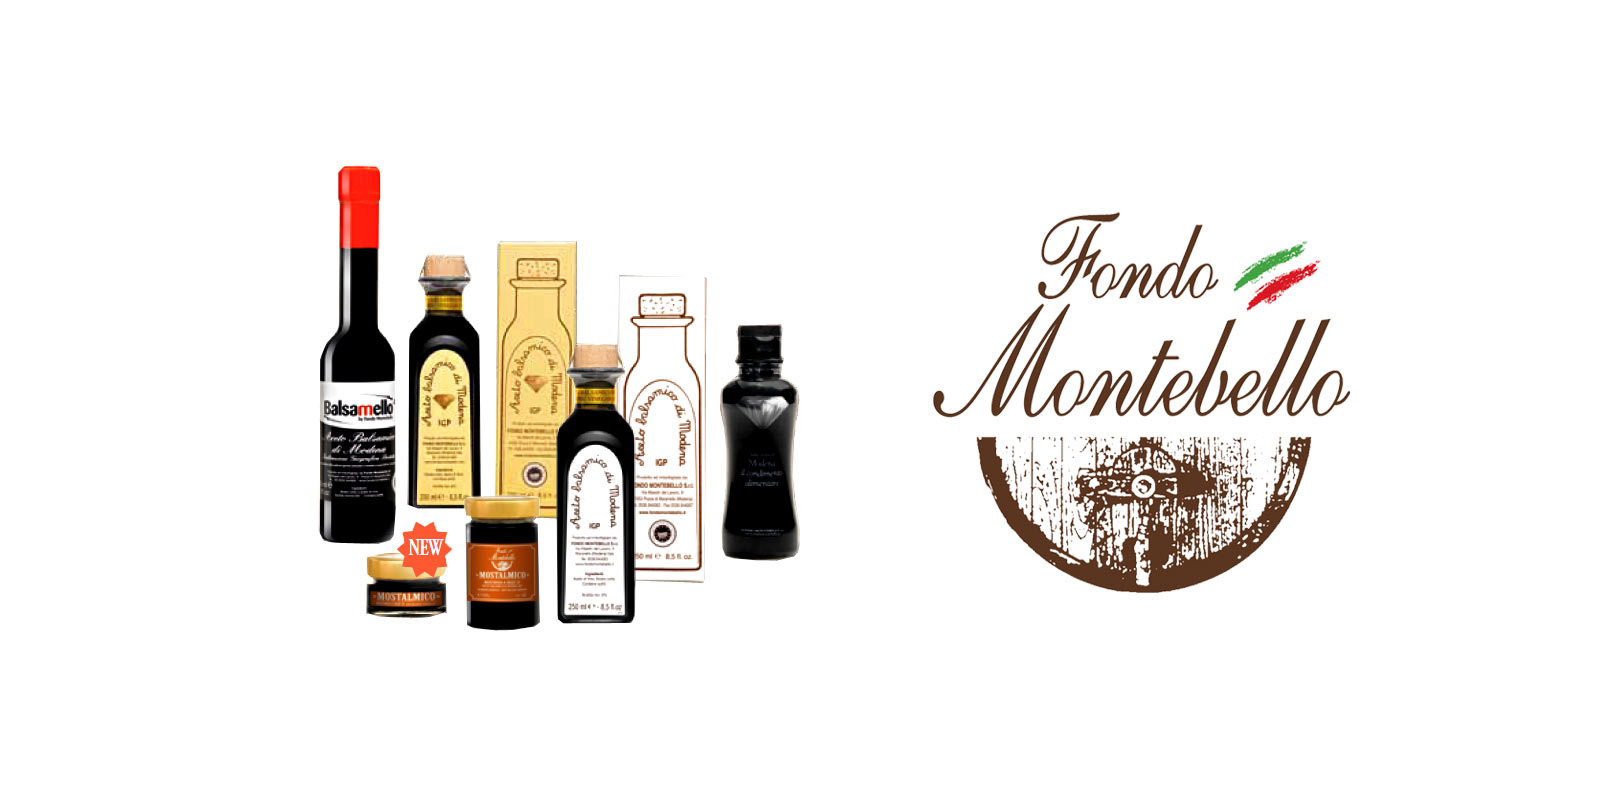 Aceto Balsamico Fondo Montebello Fondo Montebello utilizza metodi di produzione antichi e tradizionali per produrre un eccellente aceto balsamico della regione di Maranello in Italia.